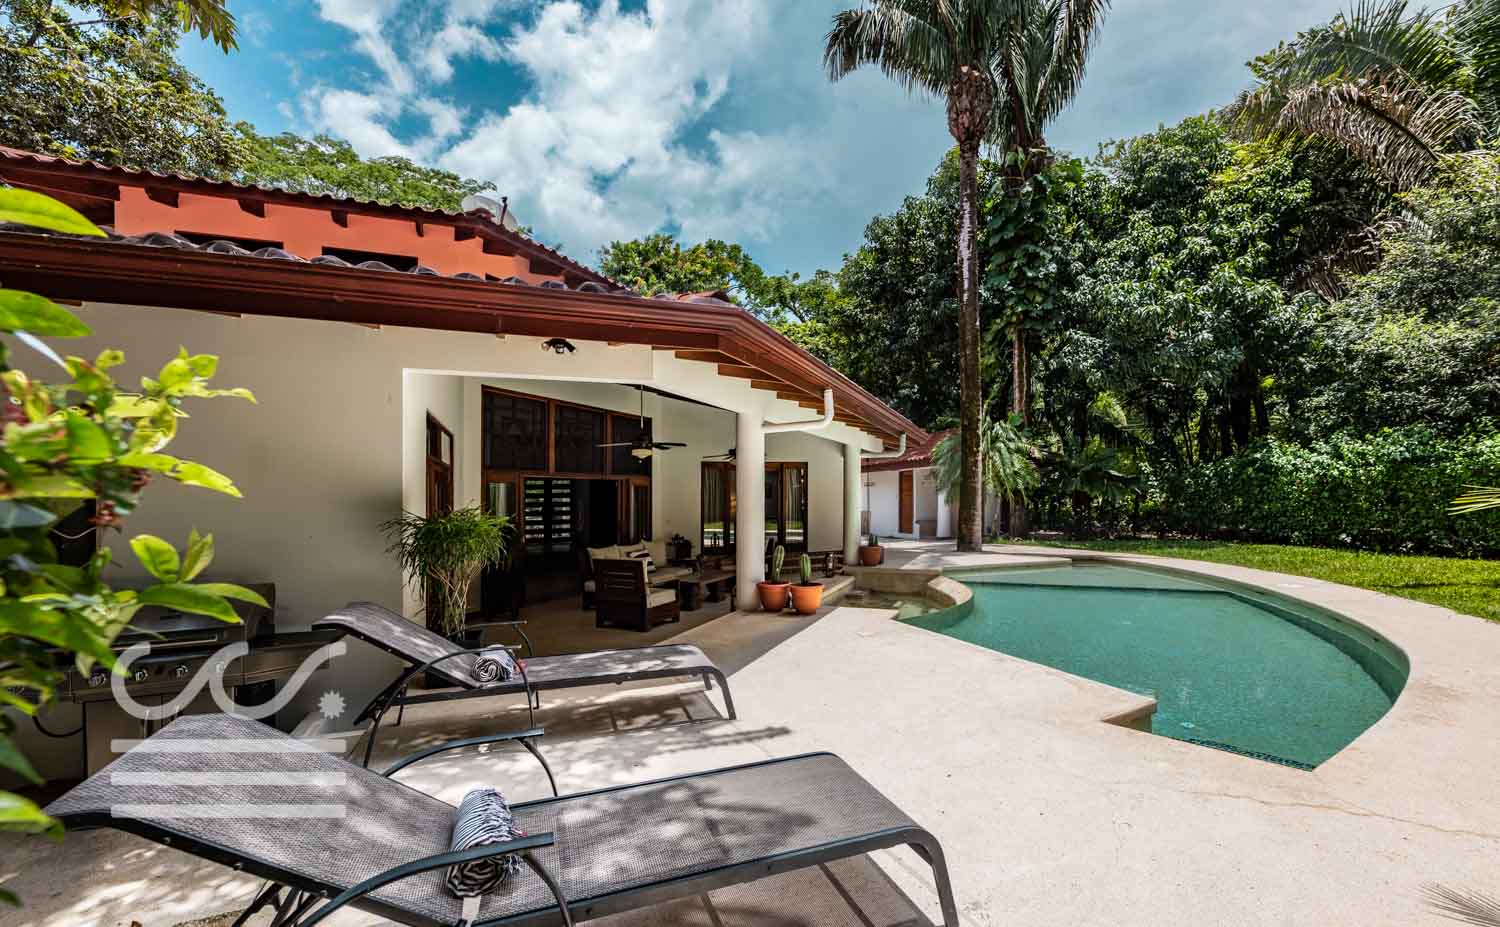 Casa-de-Sueño-Wanderlust-Realty-Real-Estate-Rentals-Nosara-Costa-Rica-2.jpg